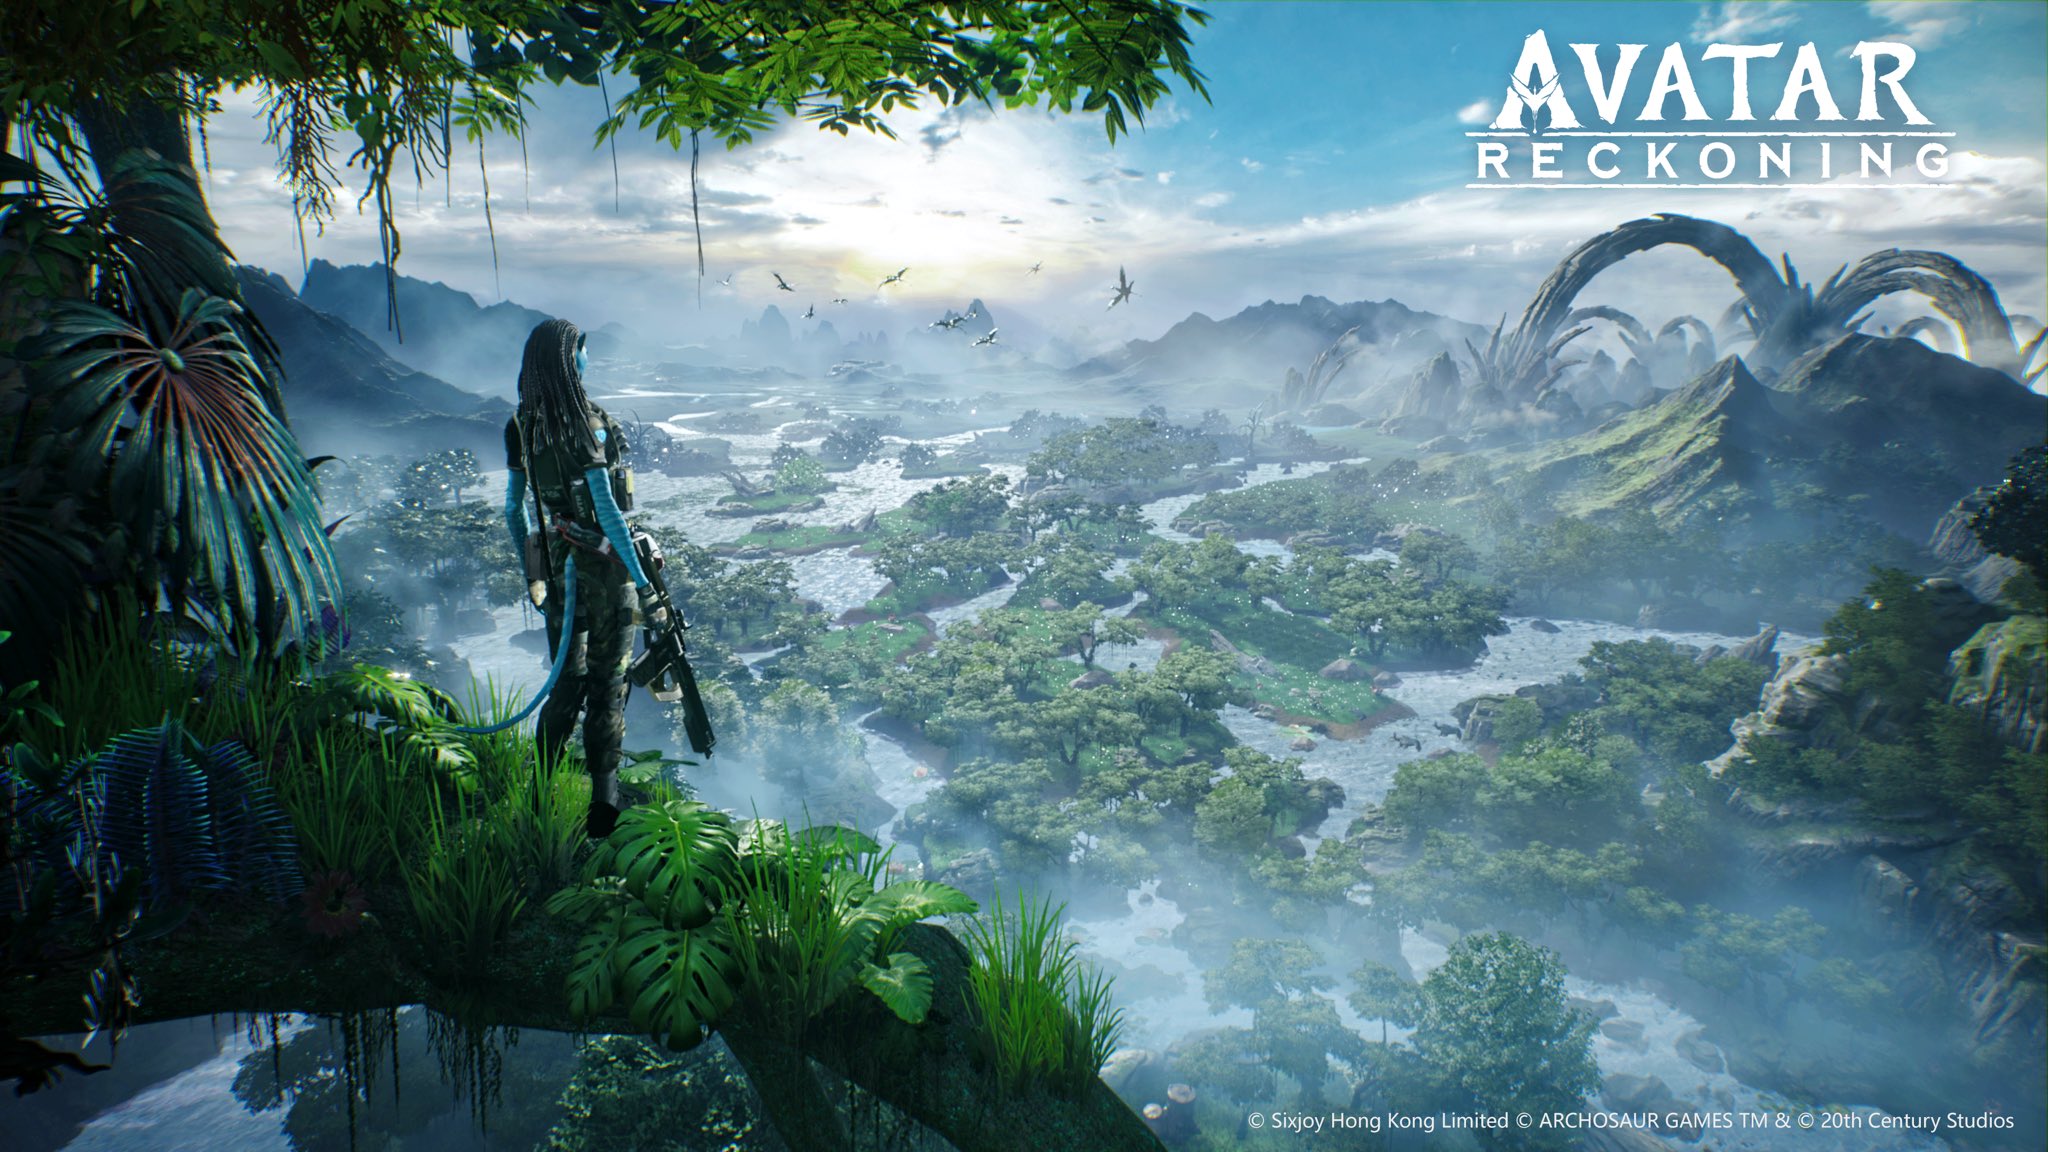 Avatar video game 2024: Advanced gameplay mechanics.
Chào mừng đến với trò chơi Avatar năm 2024! Với cơ chế chơi game tiên tiến, trải nghiệm của bạn sẽ được đưa lên một tầm cao mới. Cảm nhận nhịp đập của chiến đấu trên một hành tinh hoàn toàn mới, khám phá những vùng đất rộng lớn, và trở thành người chơi xuất sắc nhất trong thế giới Avatar. Hãy tham gia chơi và trải nghiệm ngay!